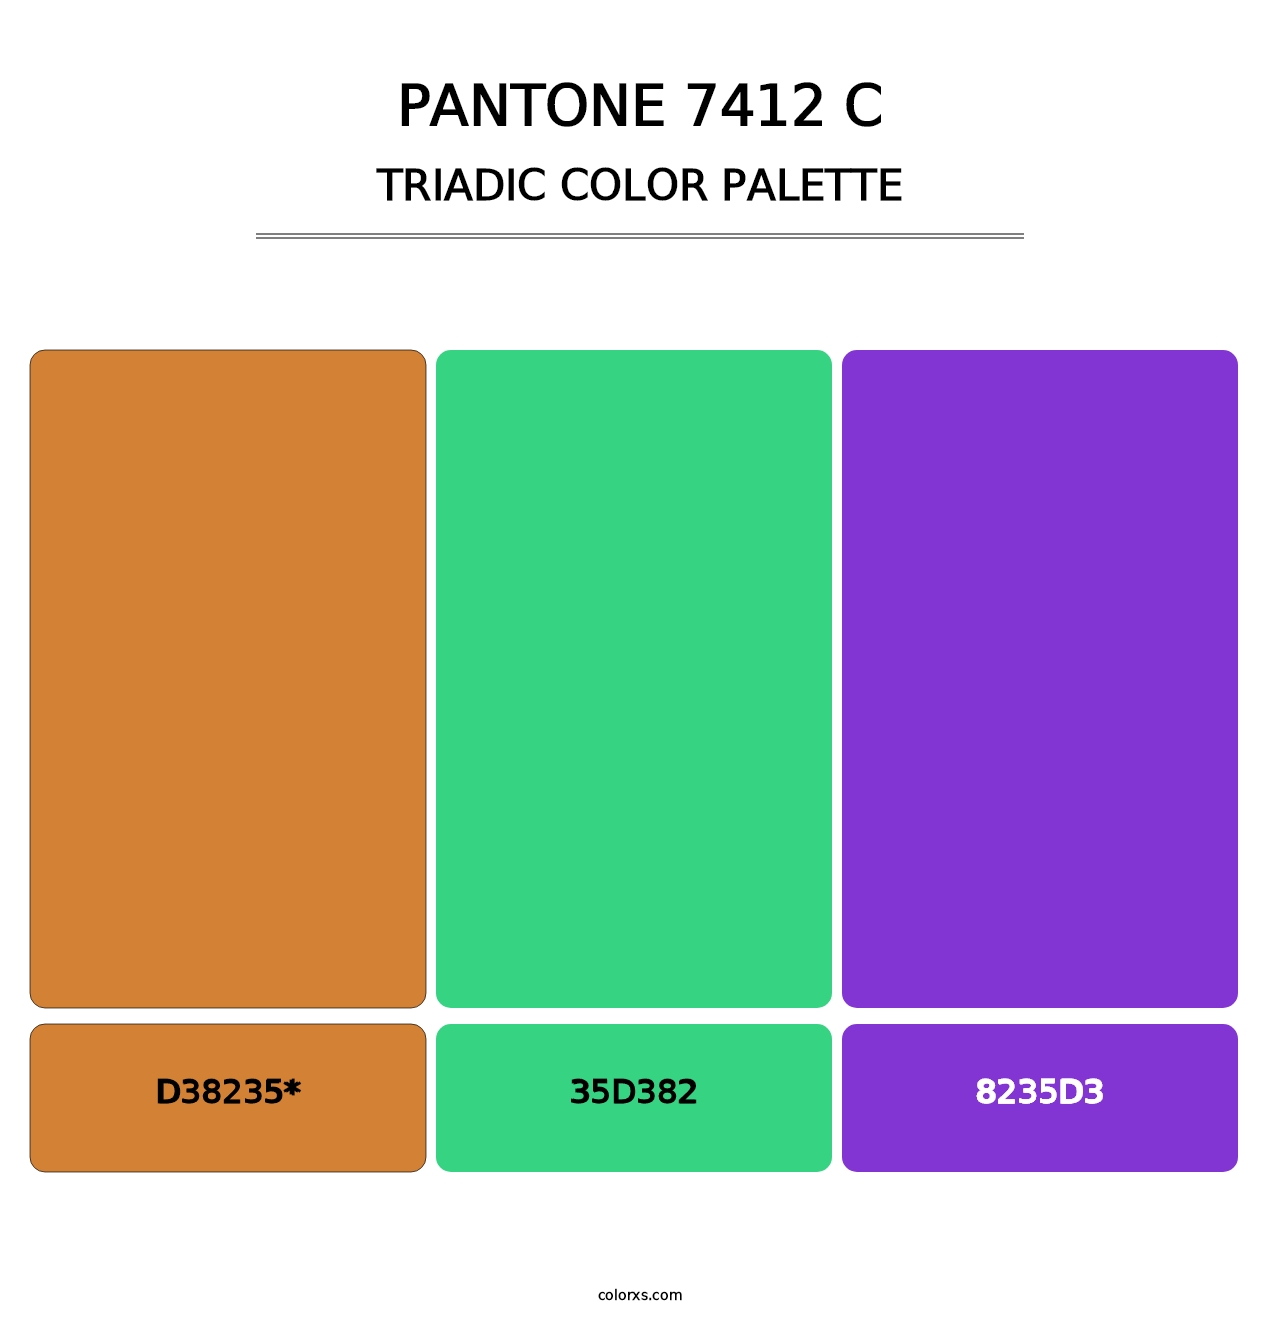 PANTONE 7412 C - Triadic Color Palette